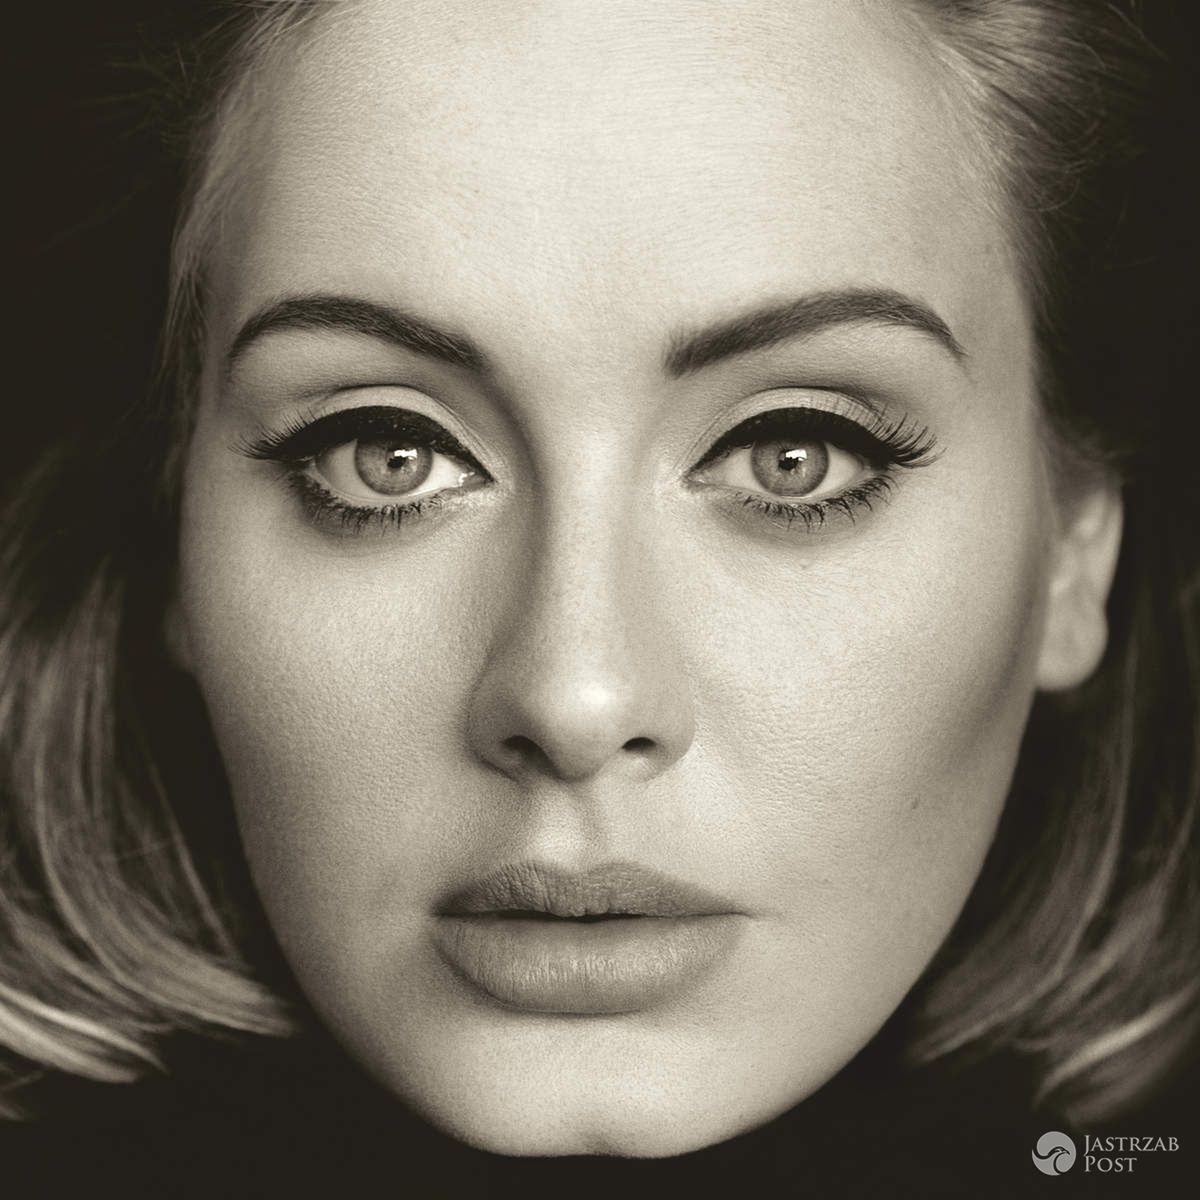 Adele - 25 (2015r.) - ok. 2 900 000 kopii